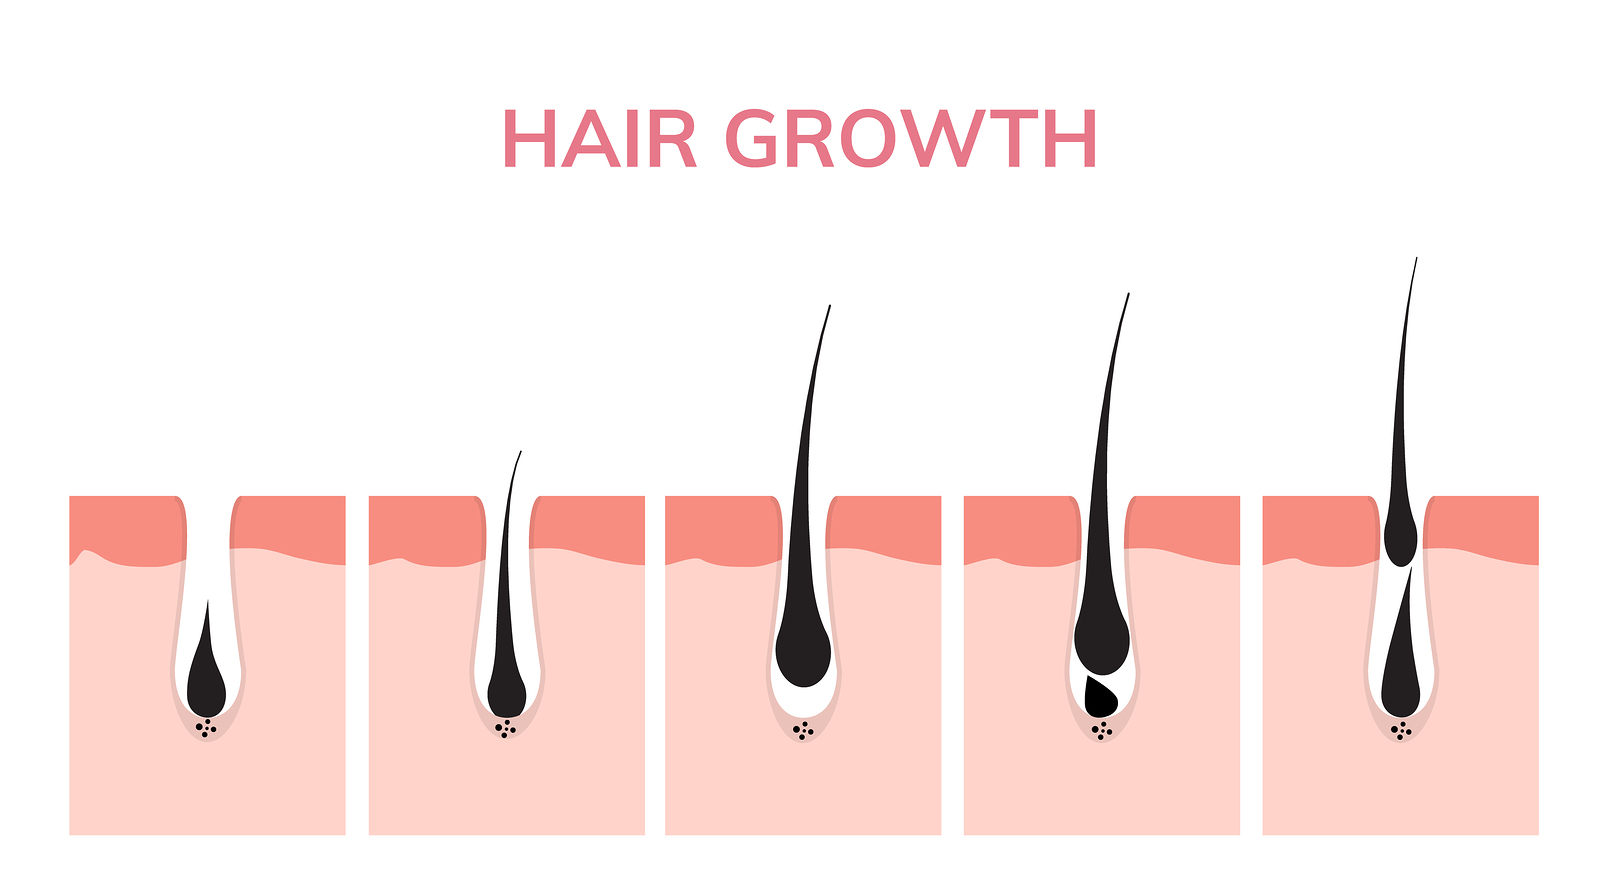 A Starpil Wax Guide To Hair Growth